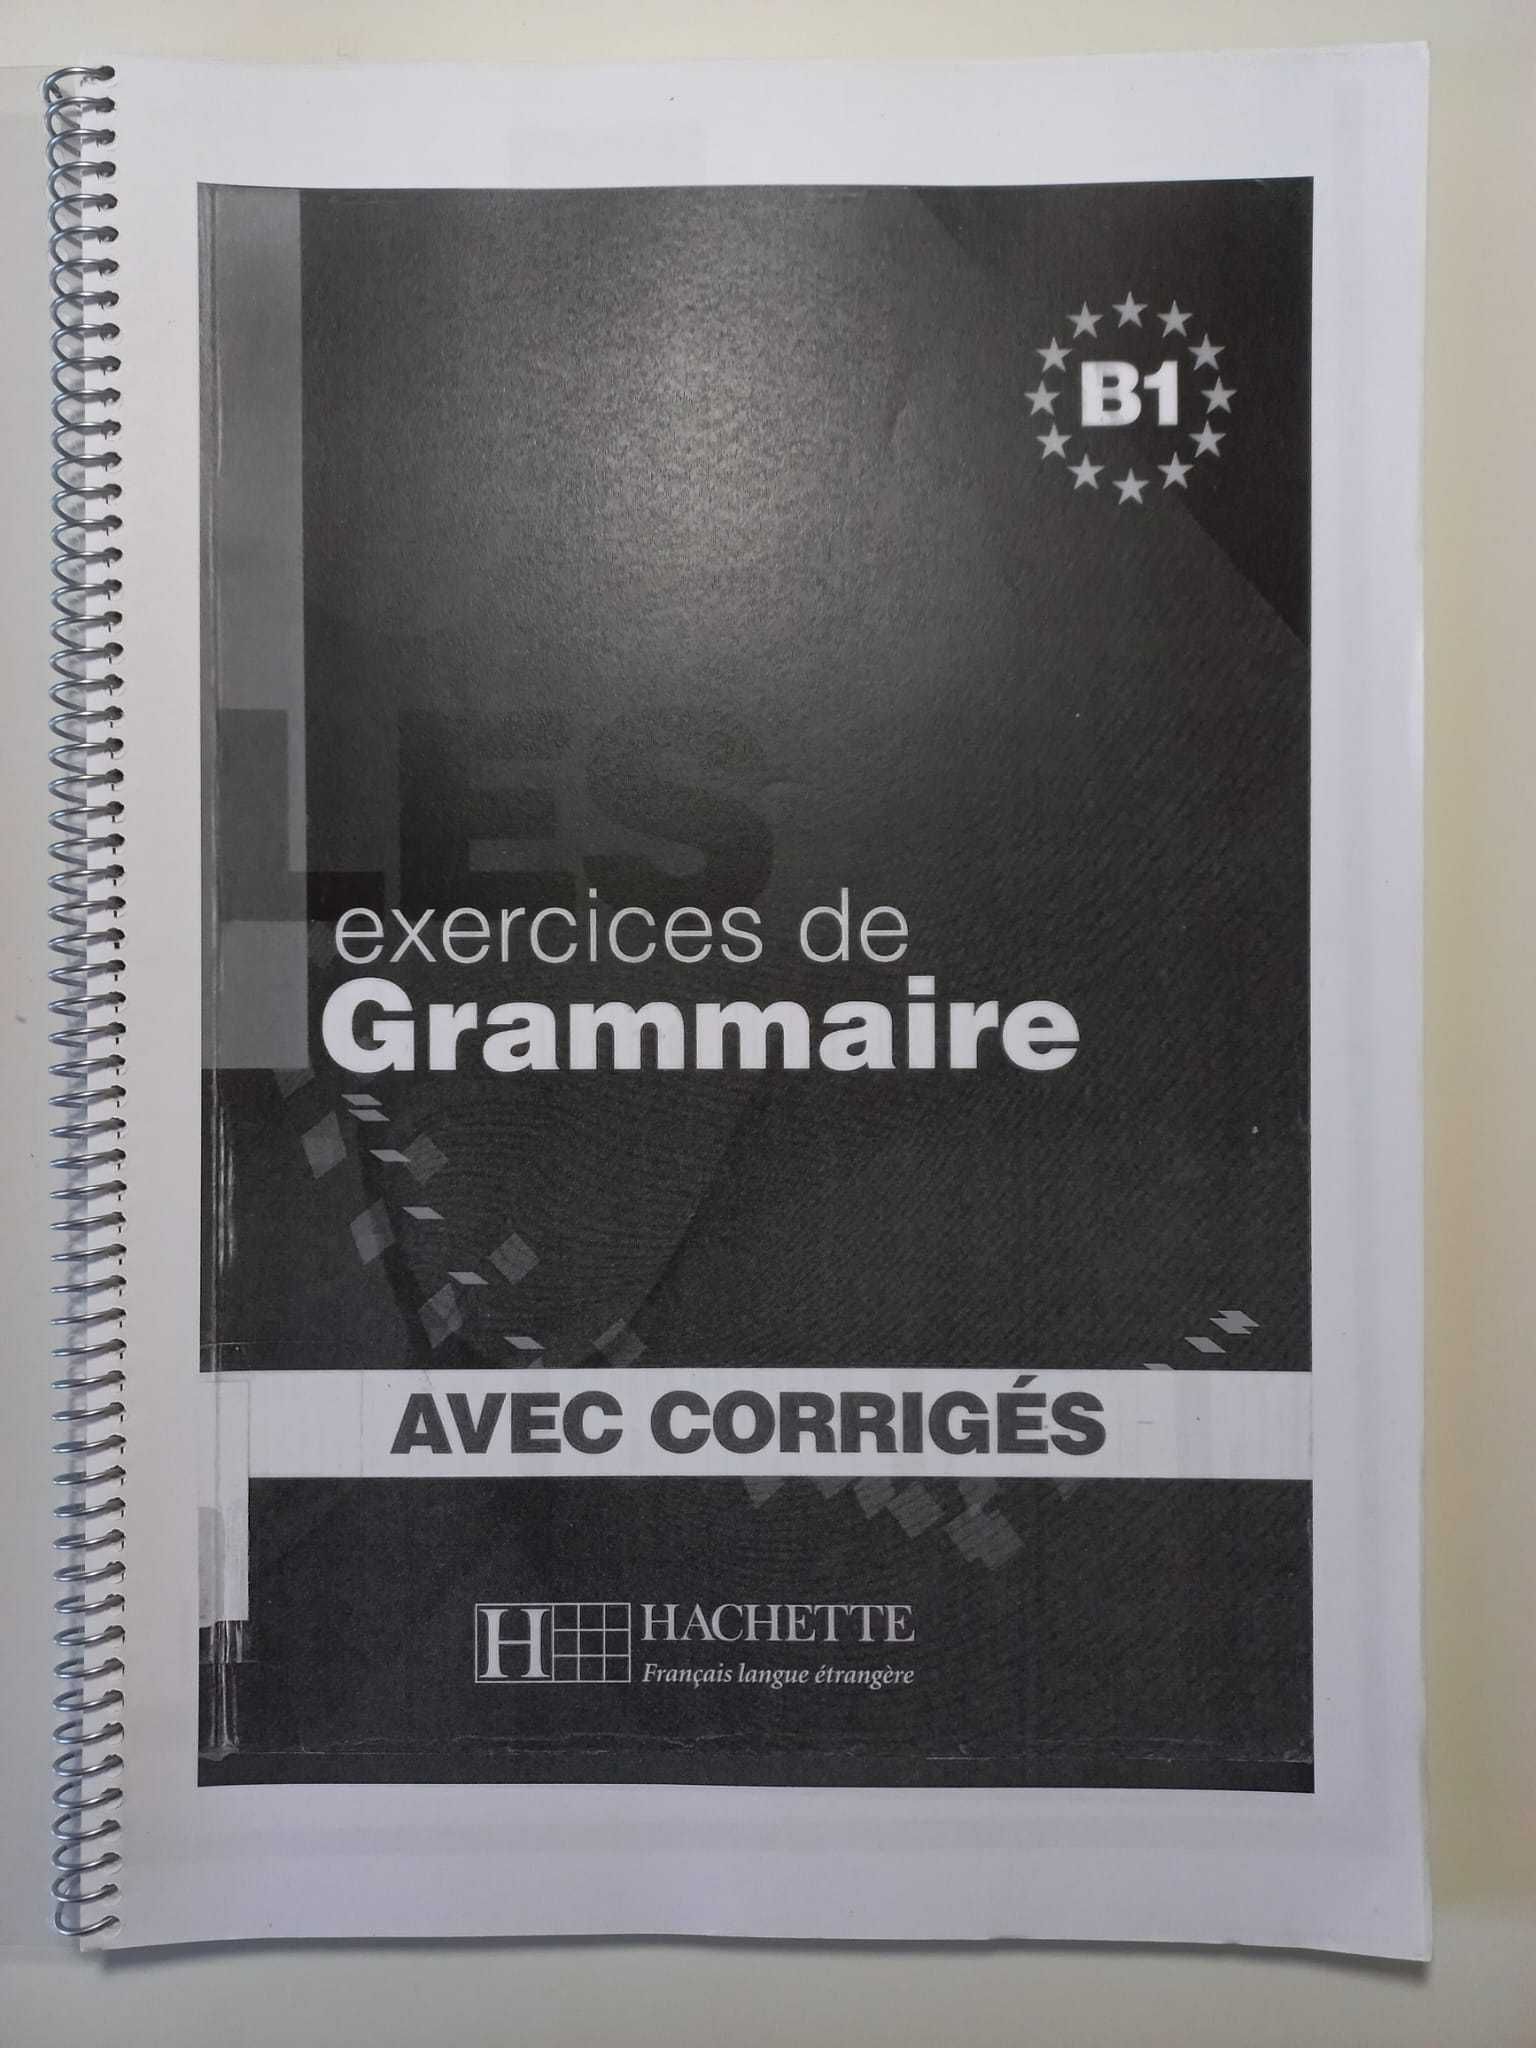 Exercices de Grammaire B1 (avec corrigés) Hachette